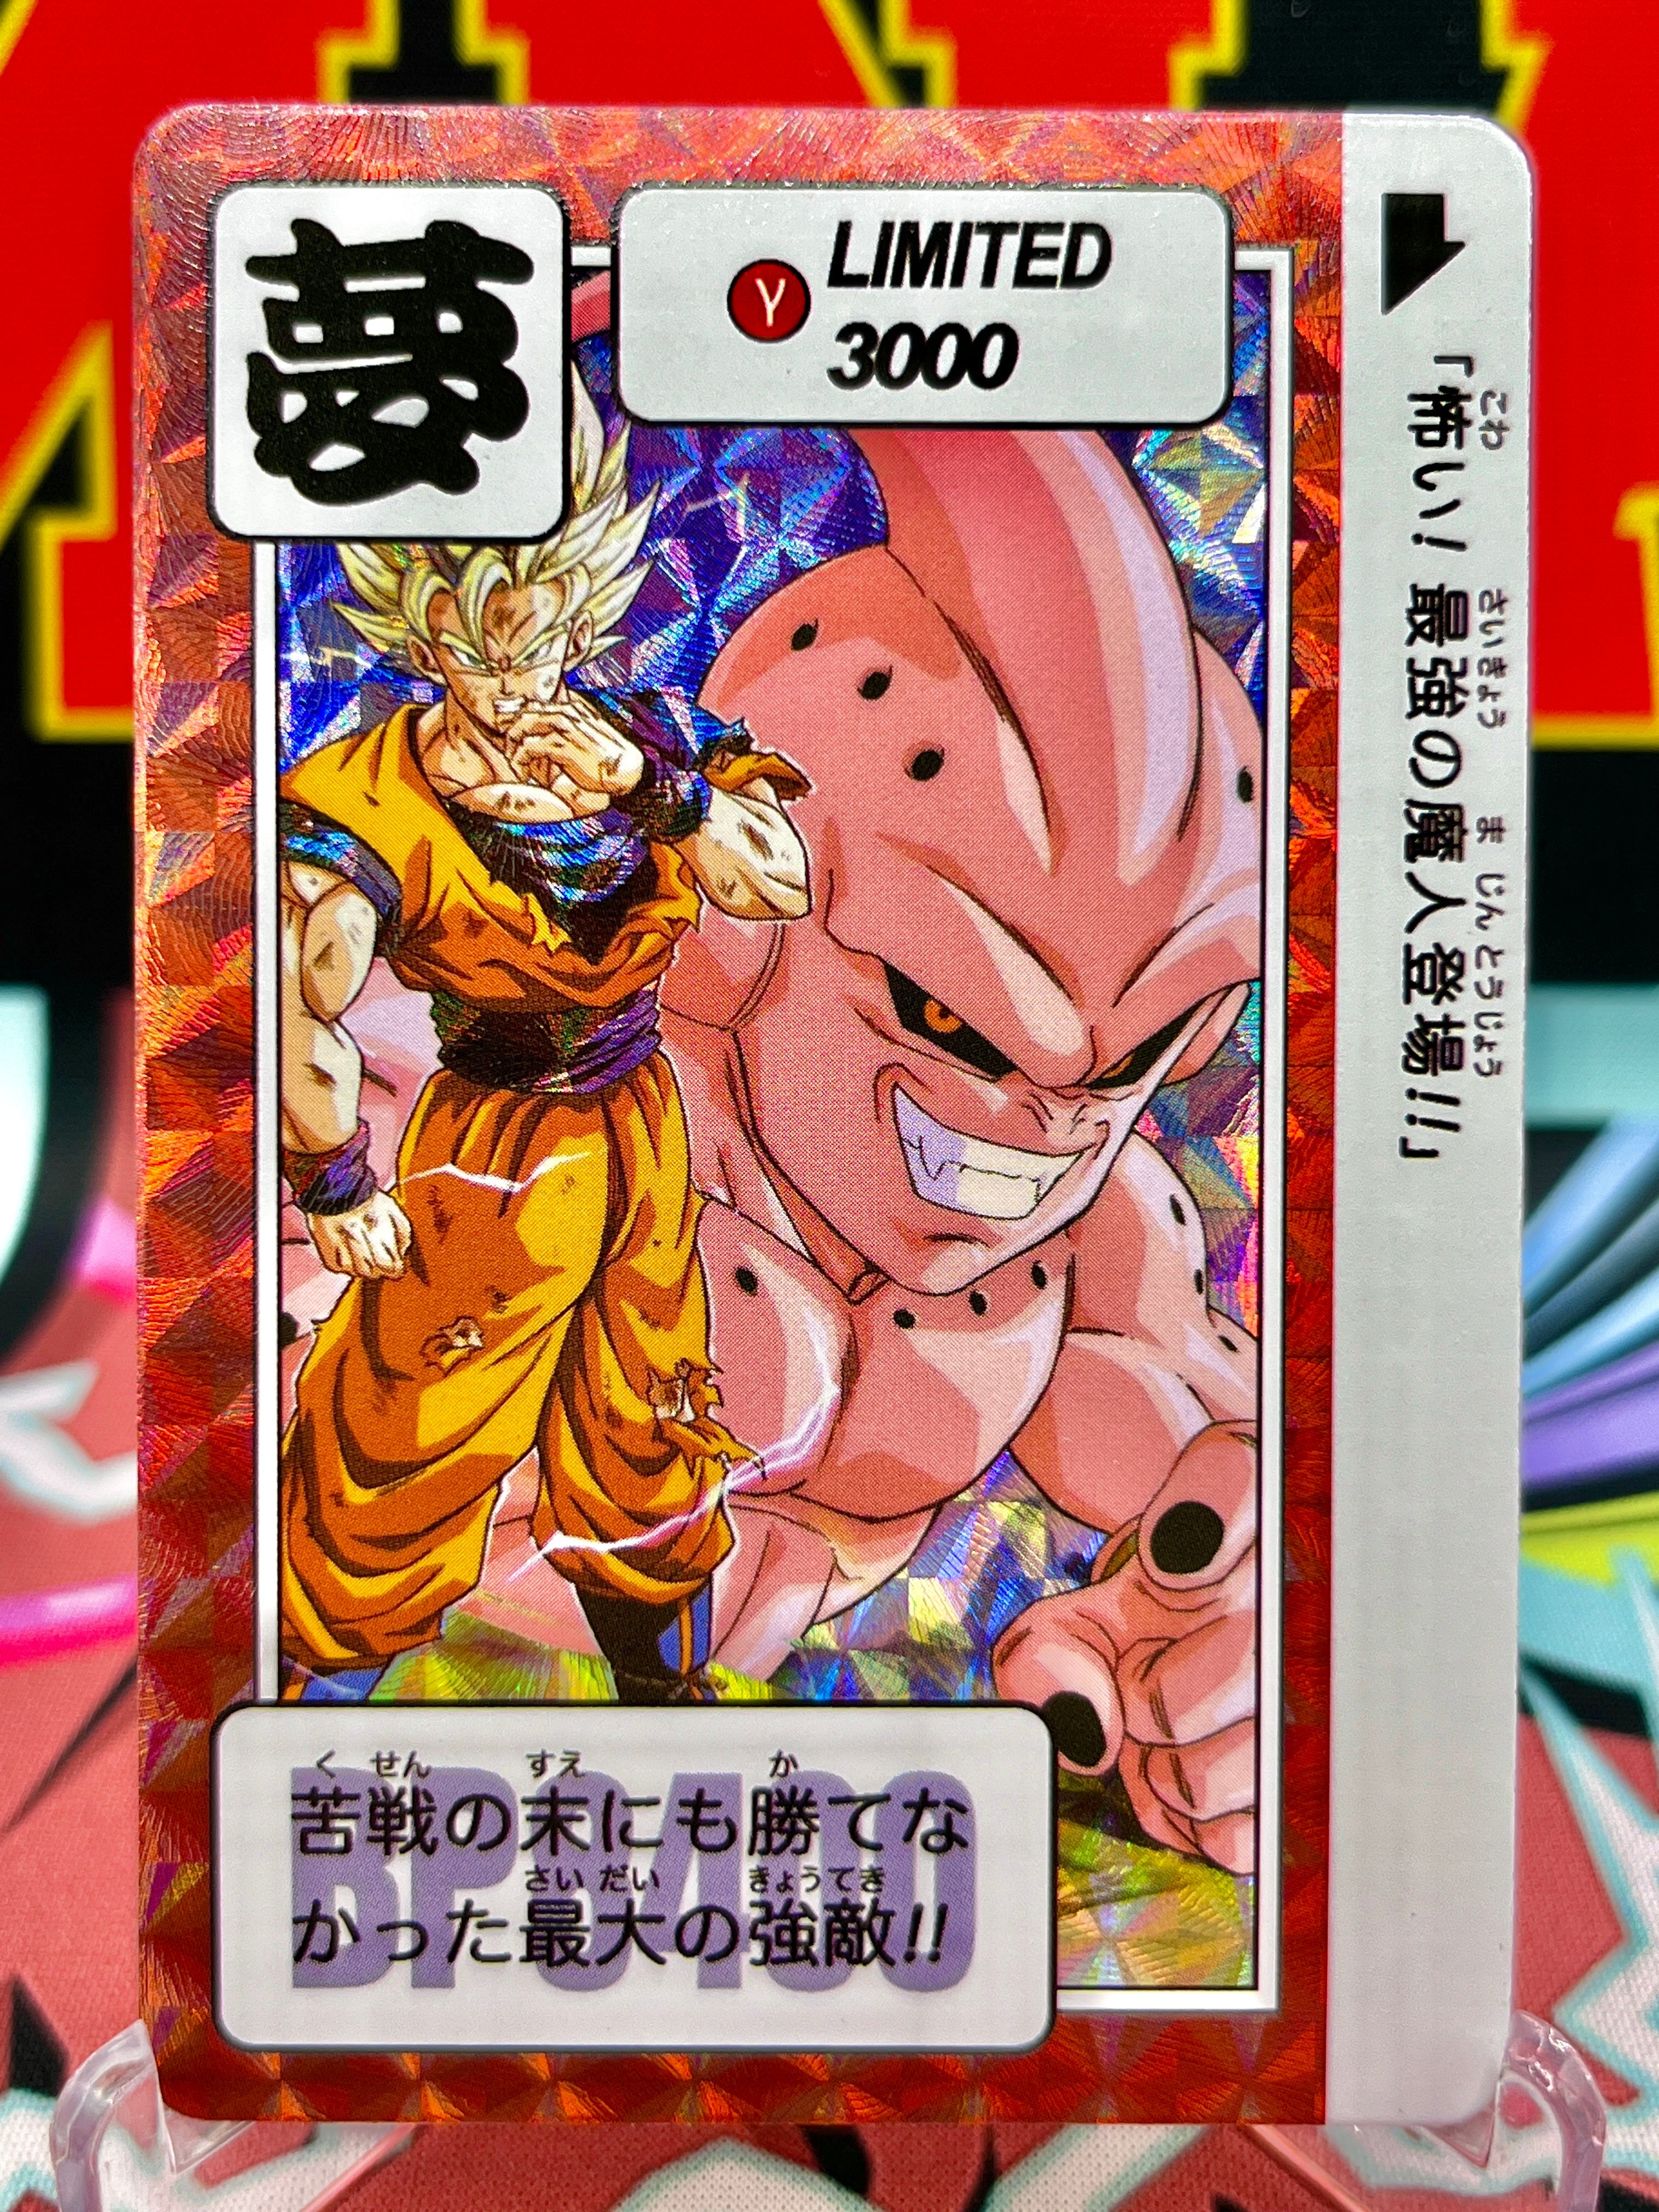 DBCA10-03 Goku & Majin Buu Art Card